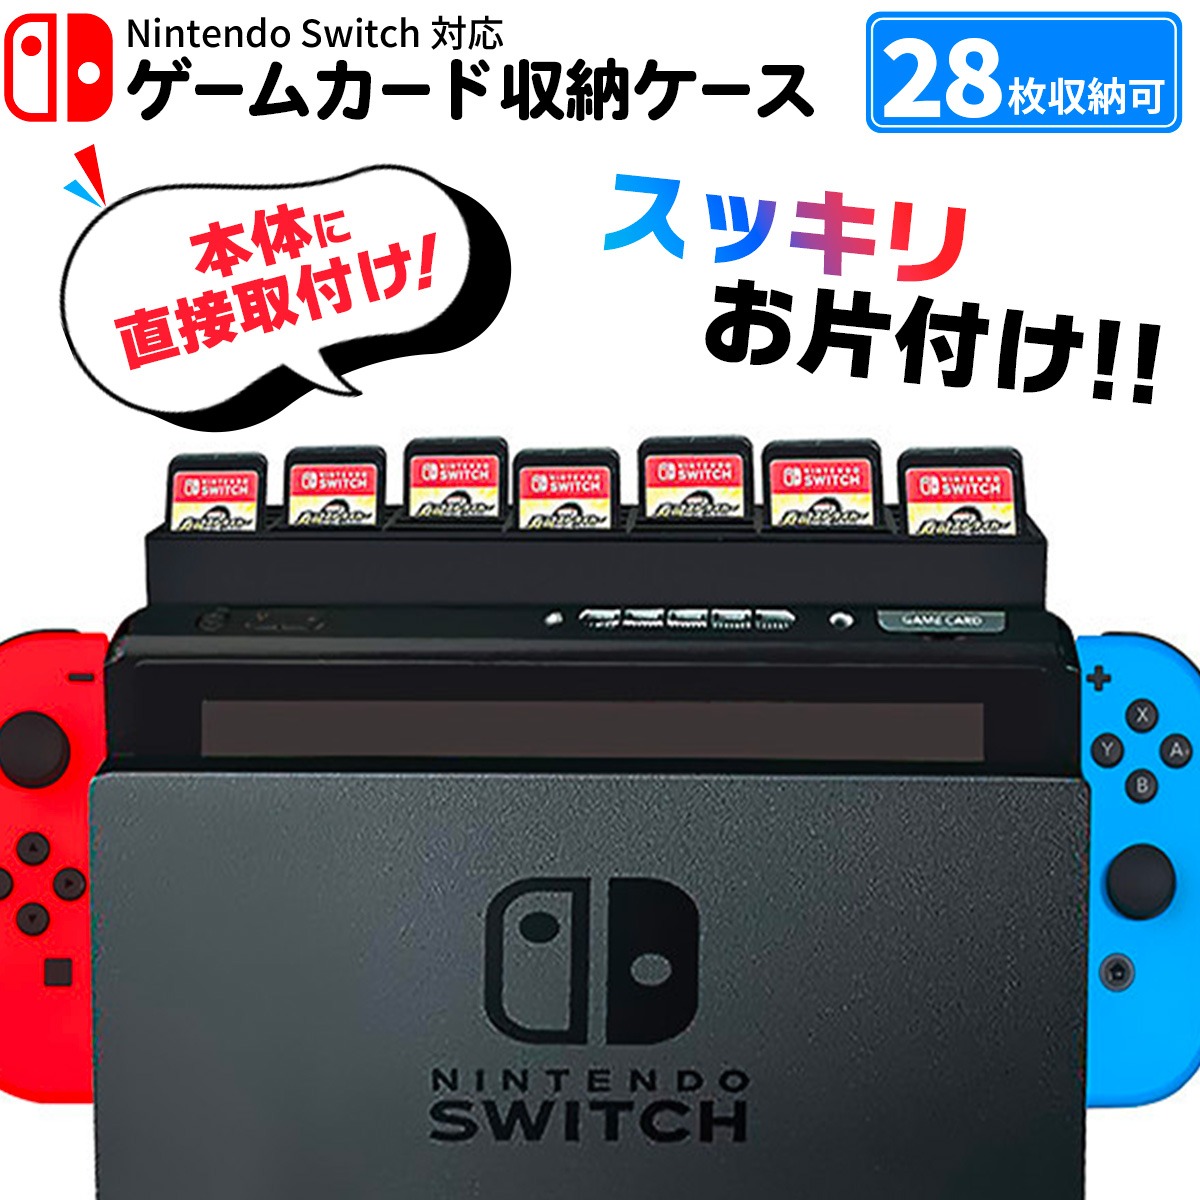 春夏新色[4A-46-002-1] 任天堂 新型Nintendo Switch ニンテンドースイッチ JOY-CON(L) /(R) グレー 動作確認済 中古 ニンテンドースイッチ本体